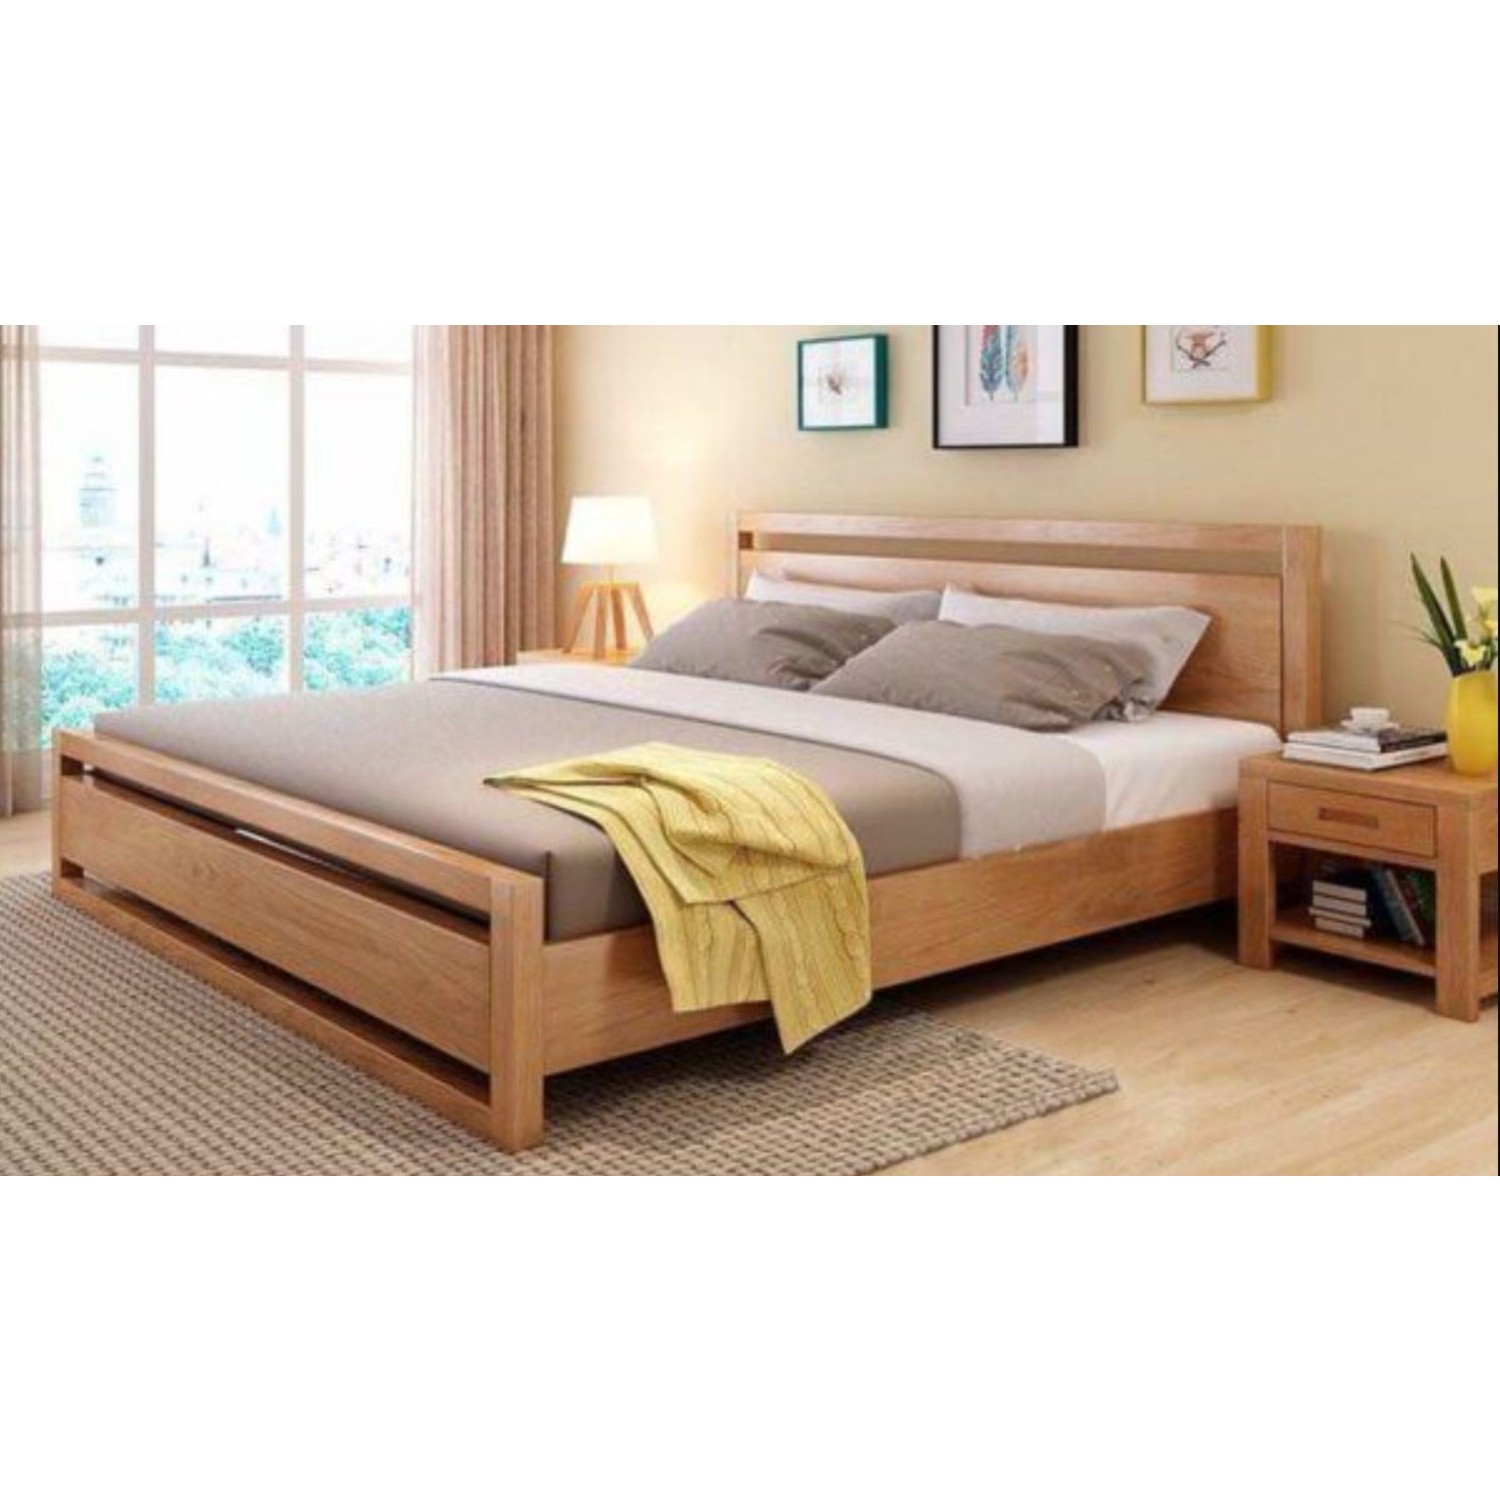 Кровать обычная двуспальная деревянная